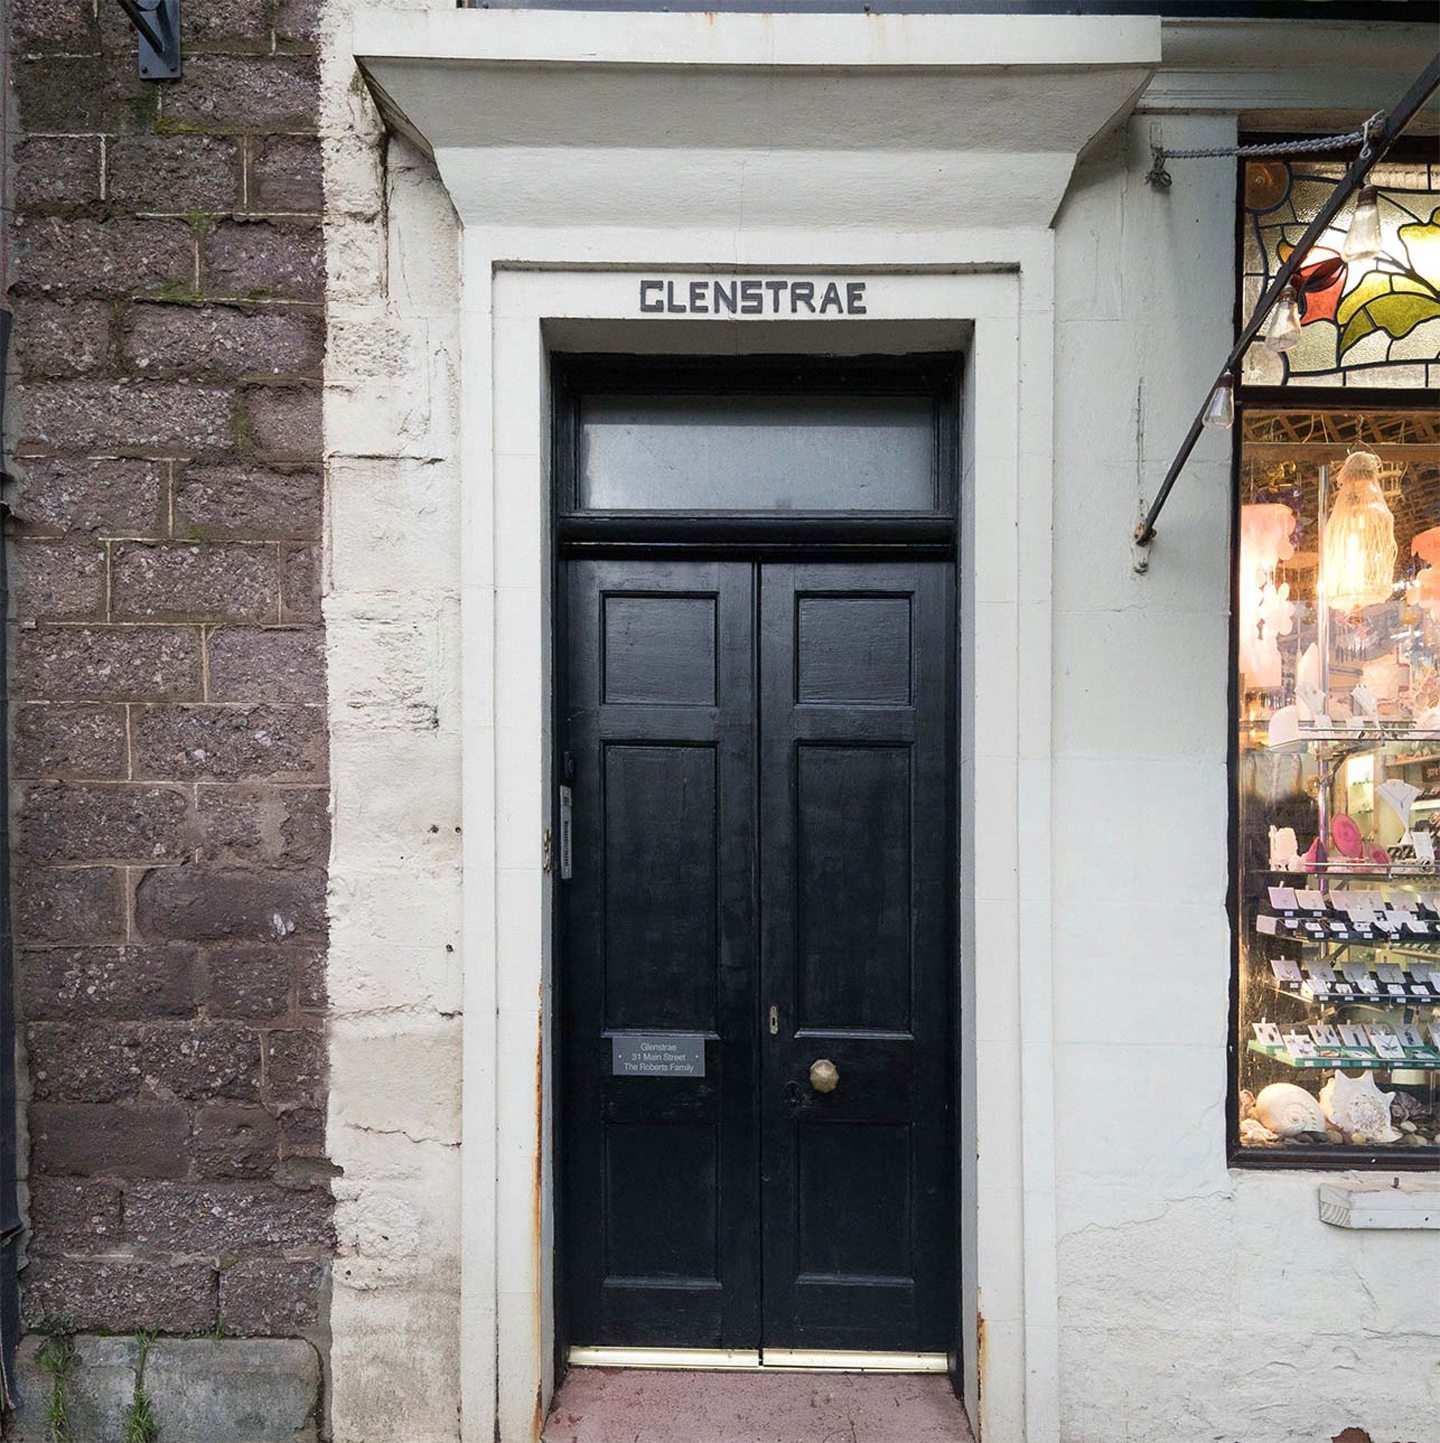 Glenstrae on Callander's Main Street is for sale for £165,000.